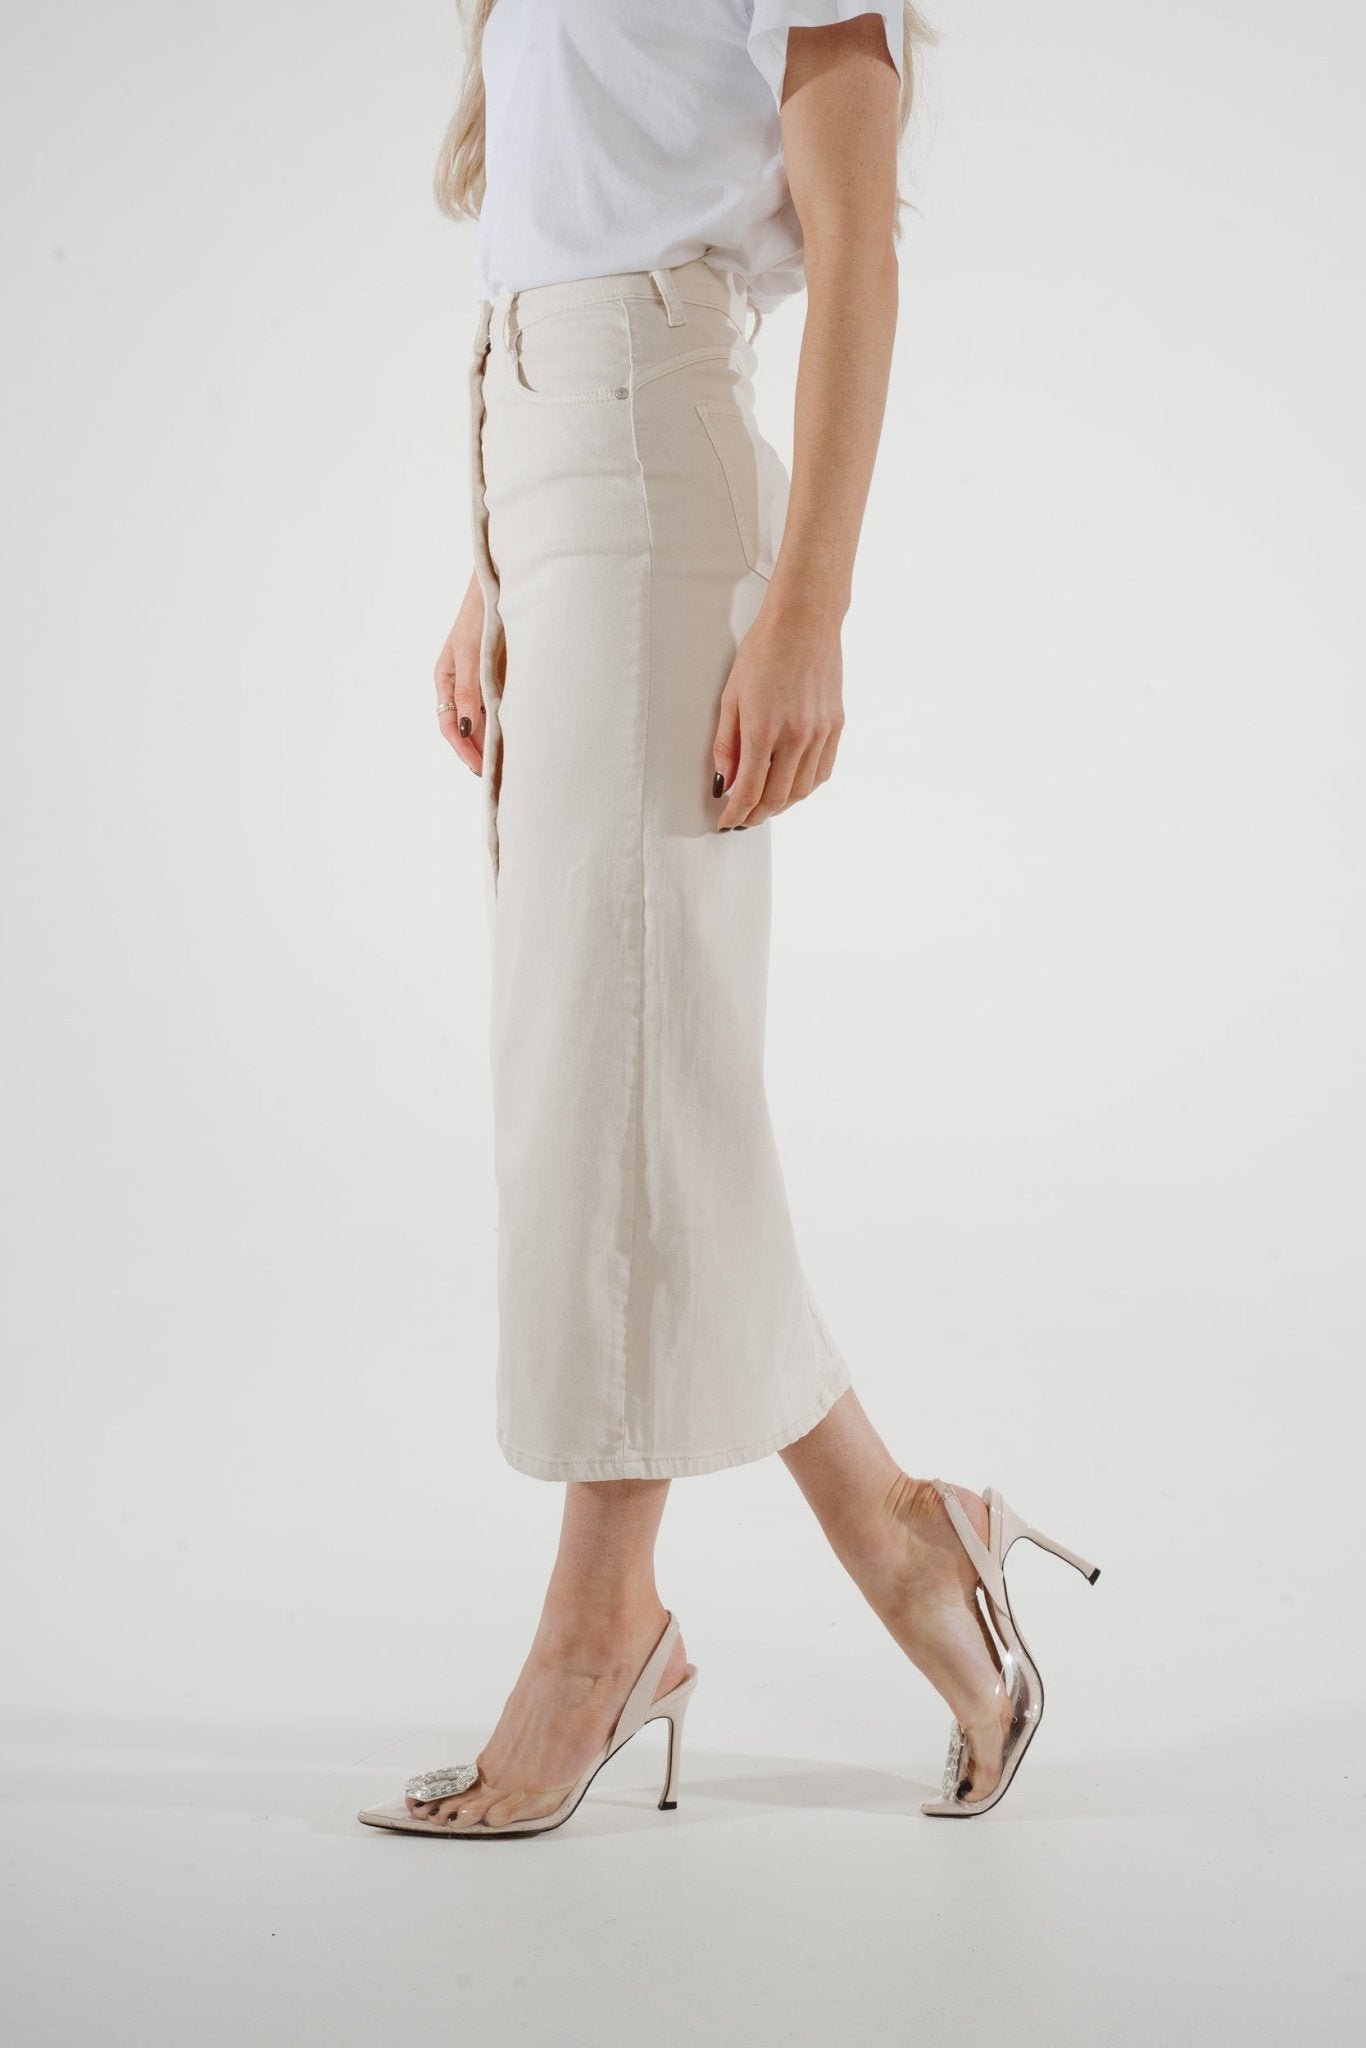 Danni Denim Midi Skirt In Cream - The Walk in Wardrobe